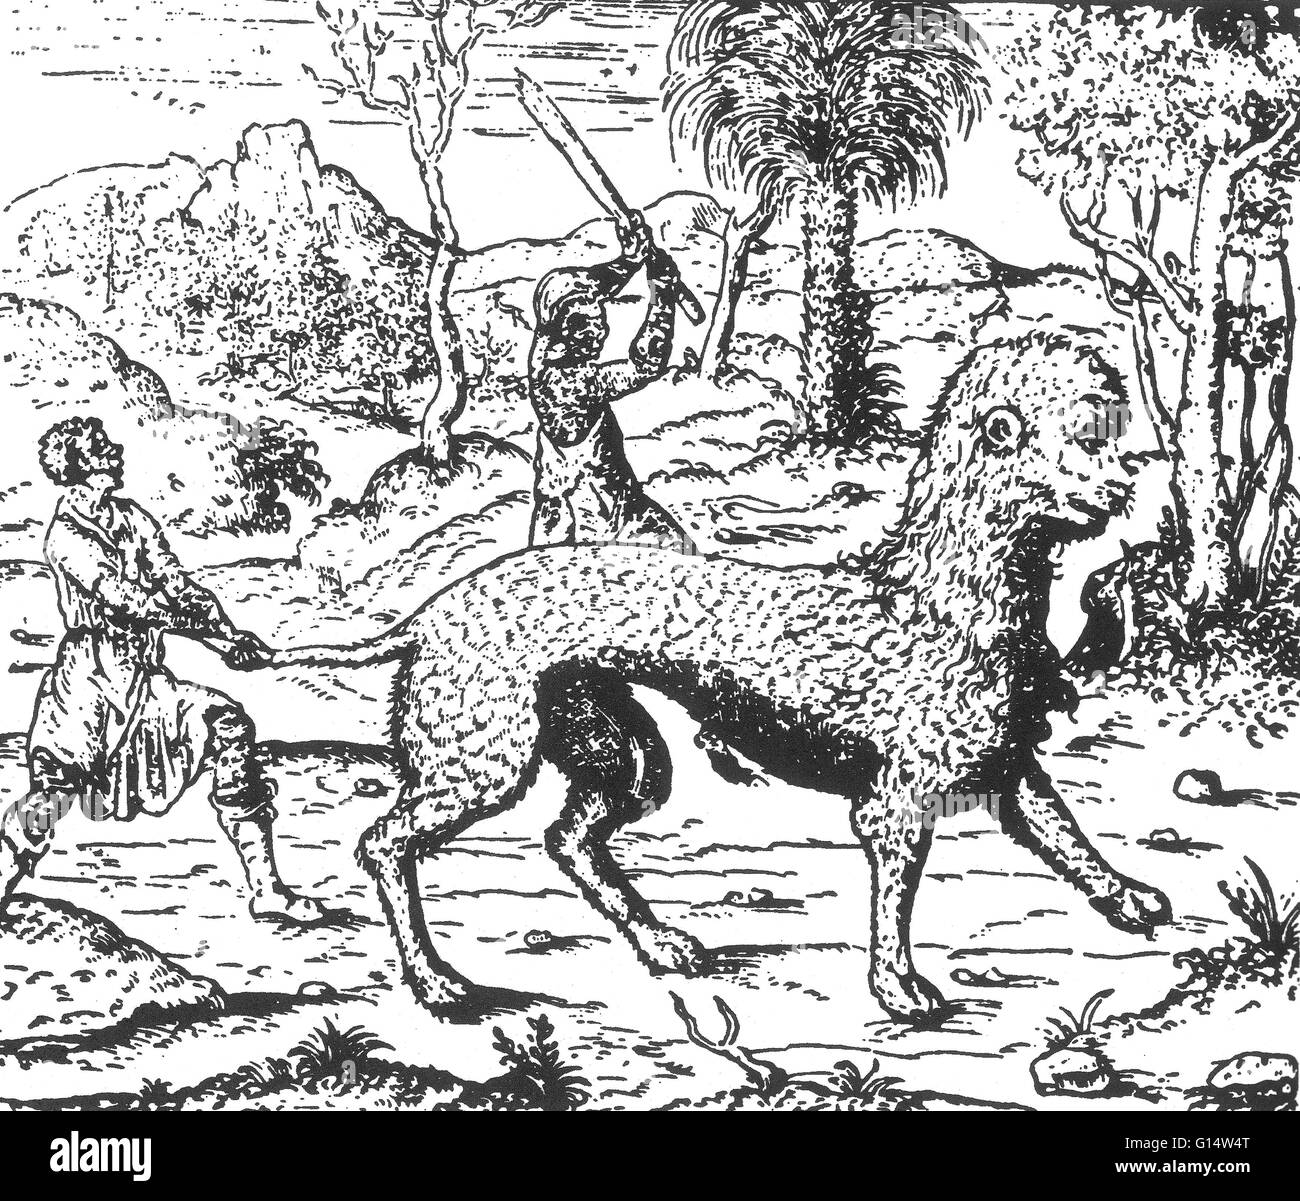 Holzschnitt "bezeichnet ein Tier Huspalim' von Des Monstres et Prodiges von Ambroise Paré, 1573. Des Monstres ist gefüllt mit unbegründeten Konten der Sea Devils, marine Sauen und monströse Tiere mit menschlichen Gesichtern. Mit seinen umfangreichen Diskussion über Geräusche Stockfoto